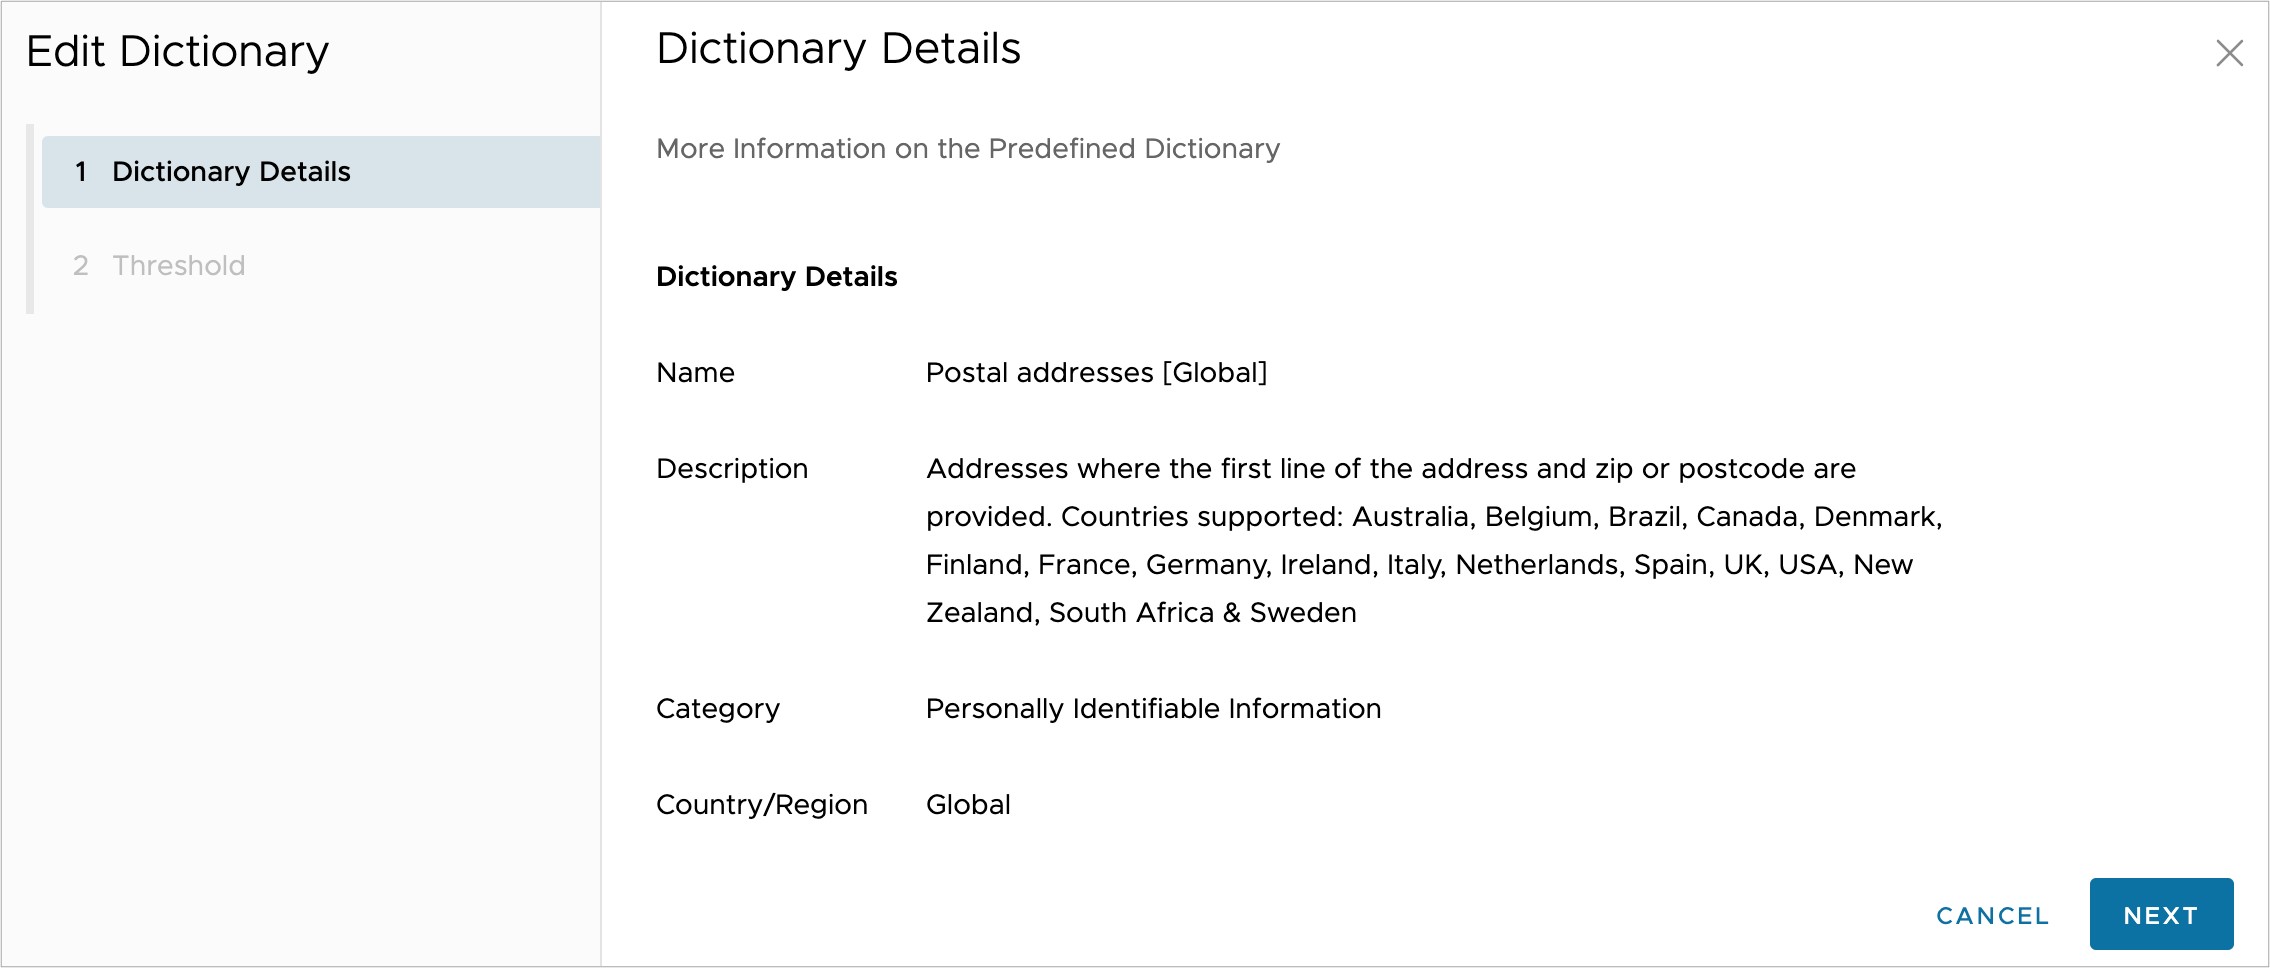 编辑字典 (Edit Dictionary) > 字典详细信息 (Dictionary Details)